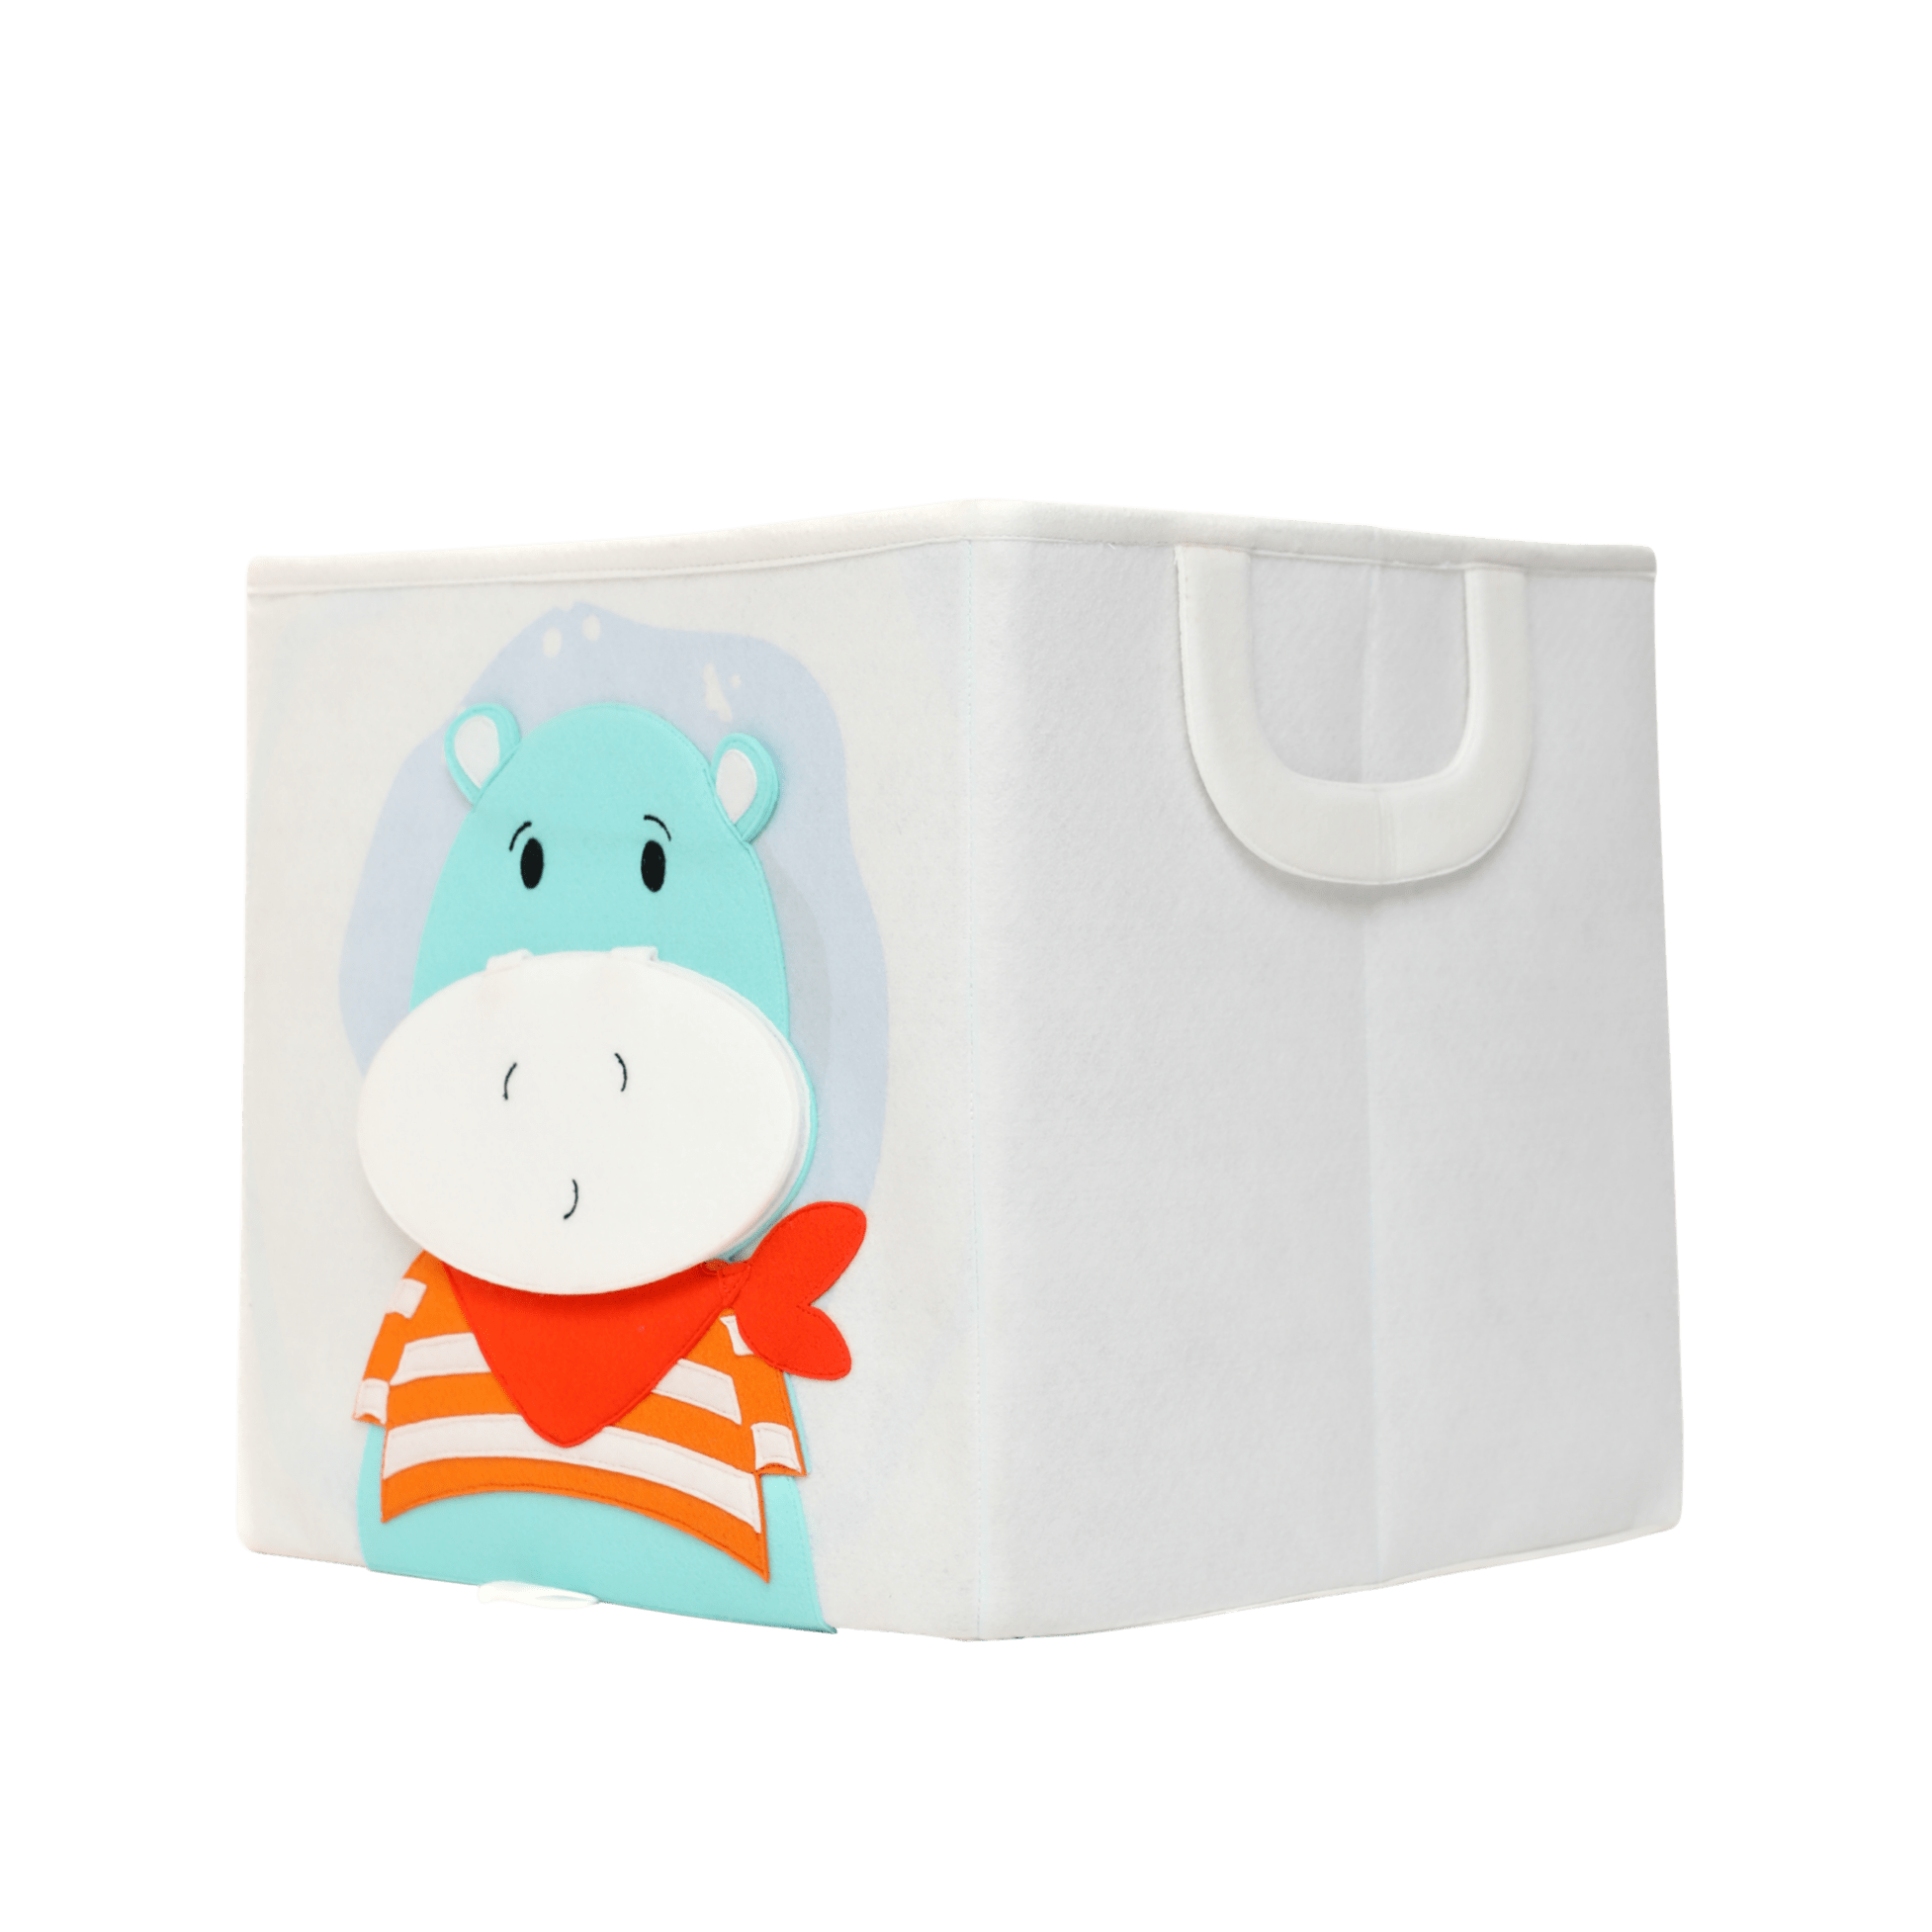 Hippo - Storage Box (square)